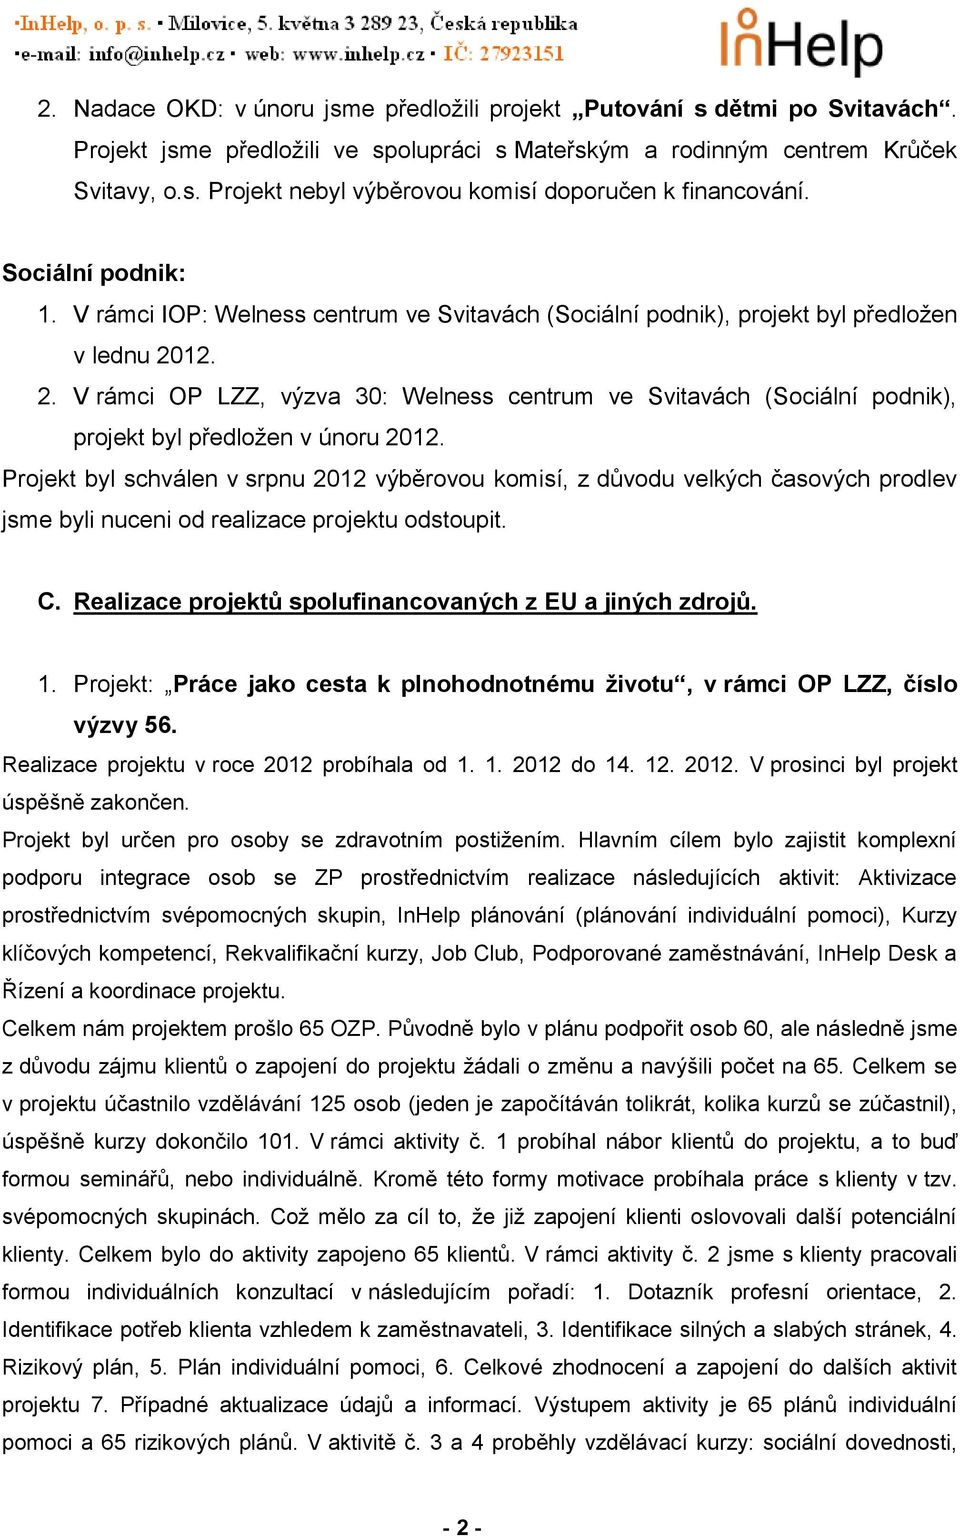 12. 2. V rámci OP LZZ, výzva 30: Welness centrum ve Svitavách (Sociální podnik), projekt byl předložen v únoru 2012.